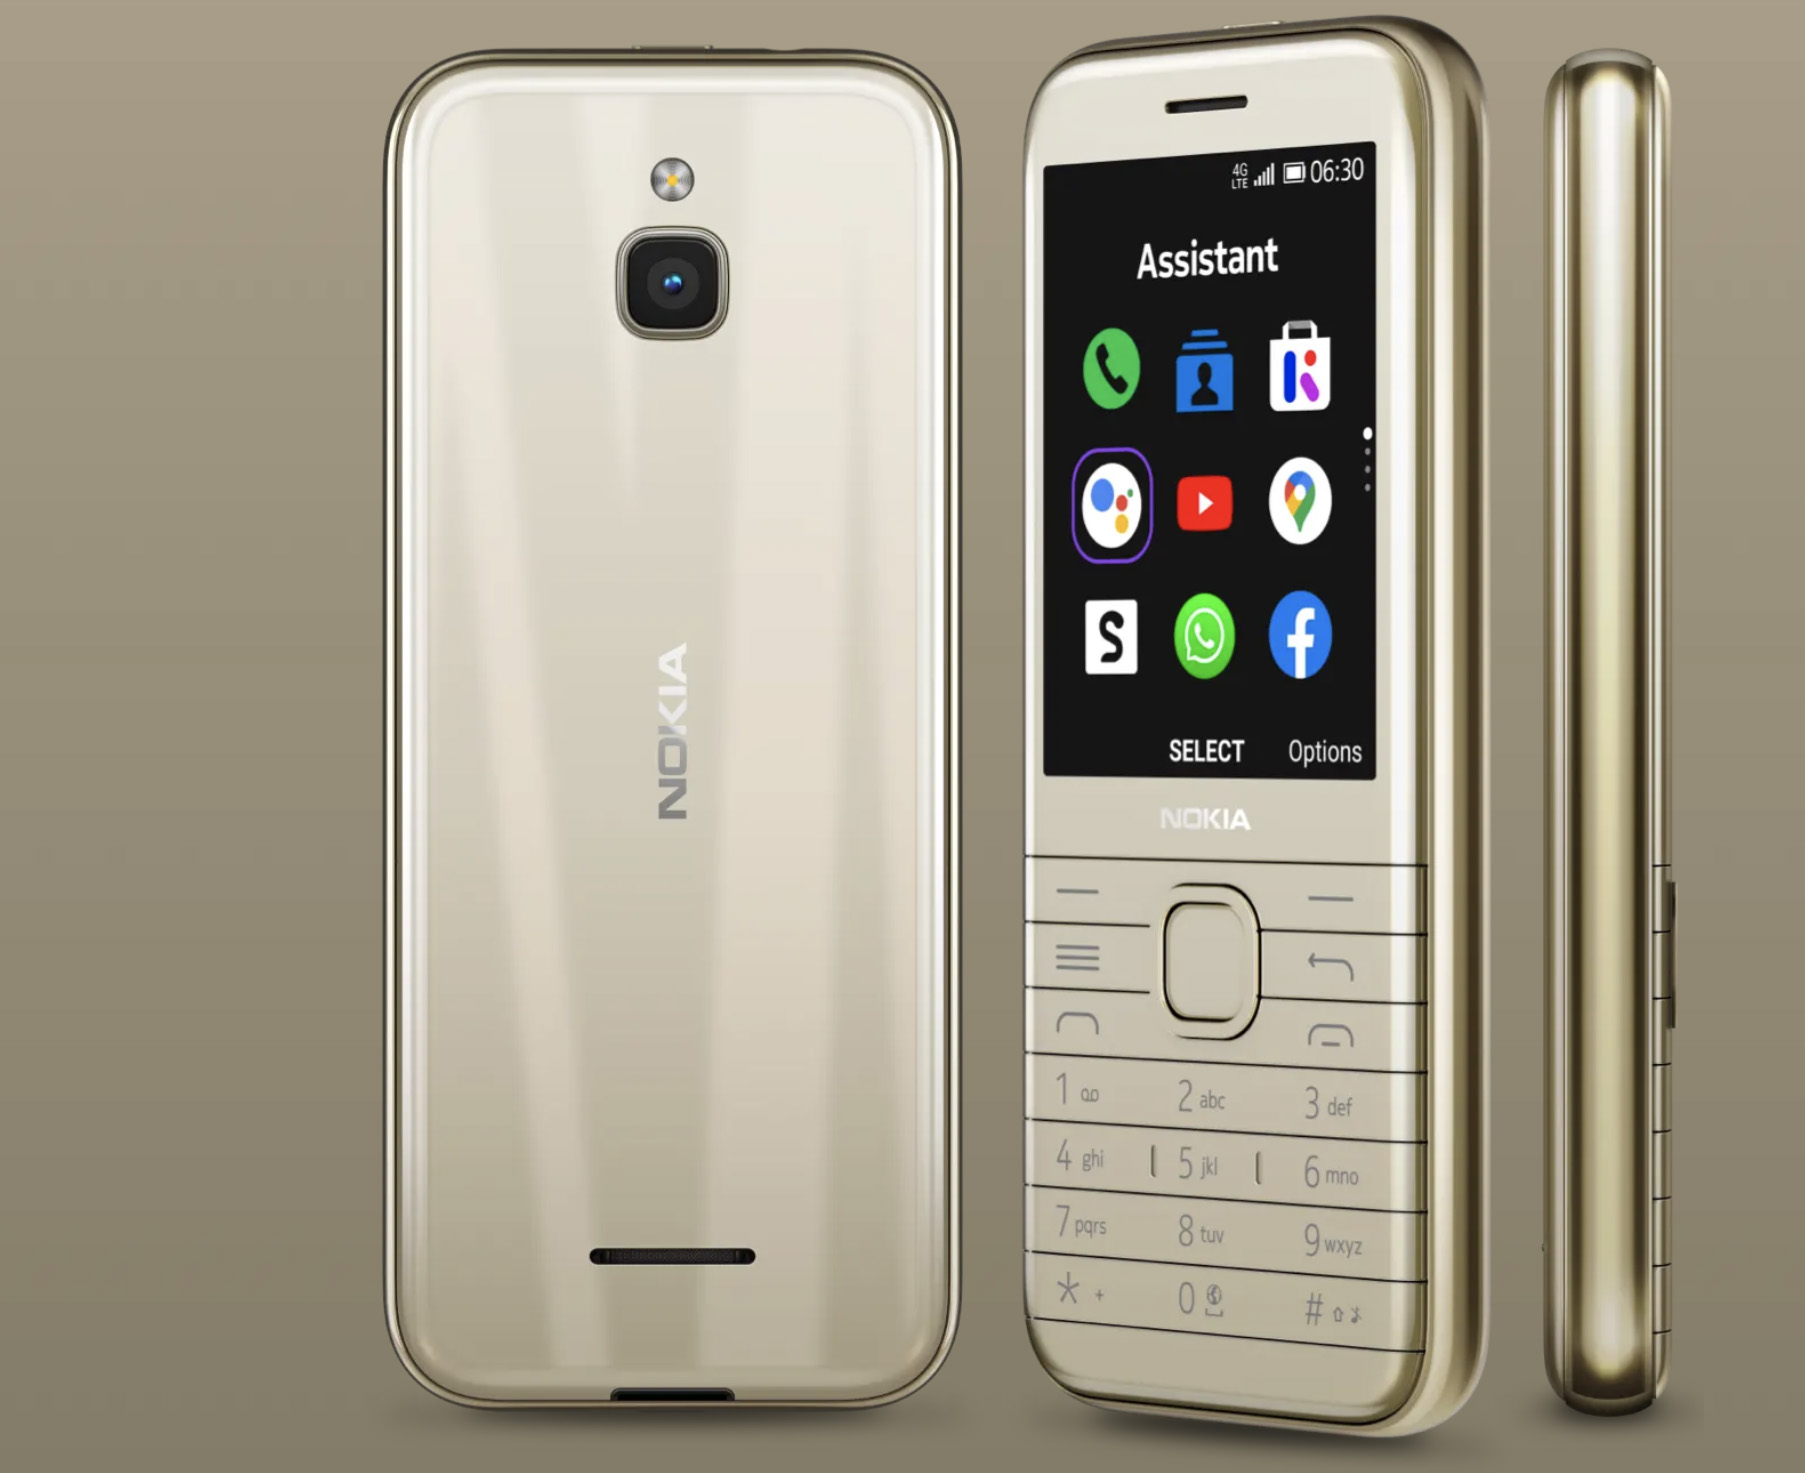 Nokia 8000 4G: недорогой кнопочный телефон, напоминающий легендарную 8000-ю серию Nokia